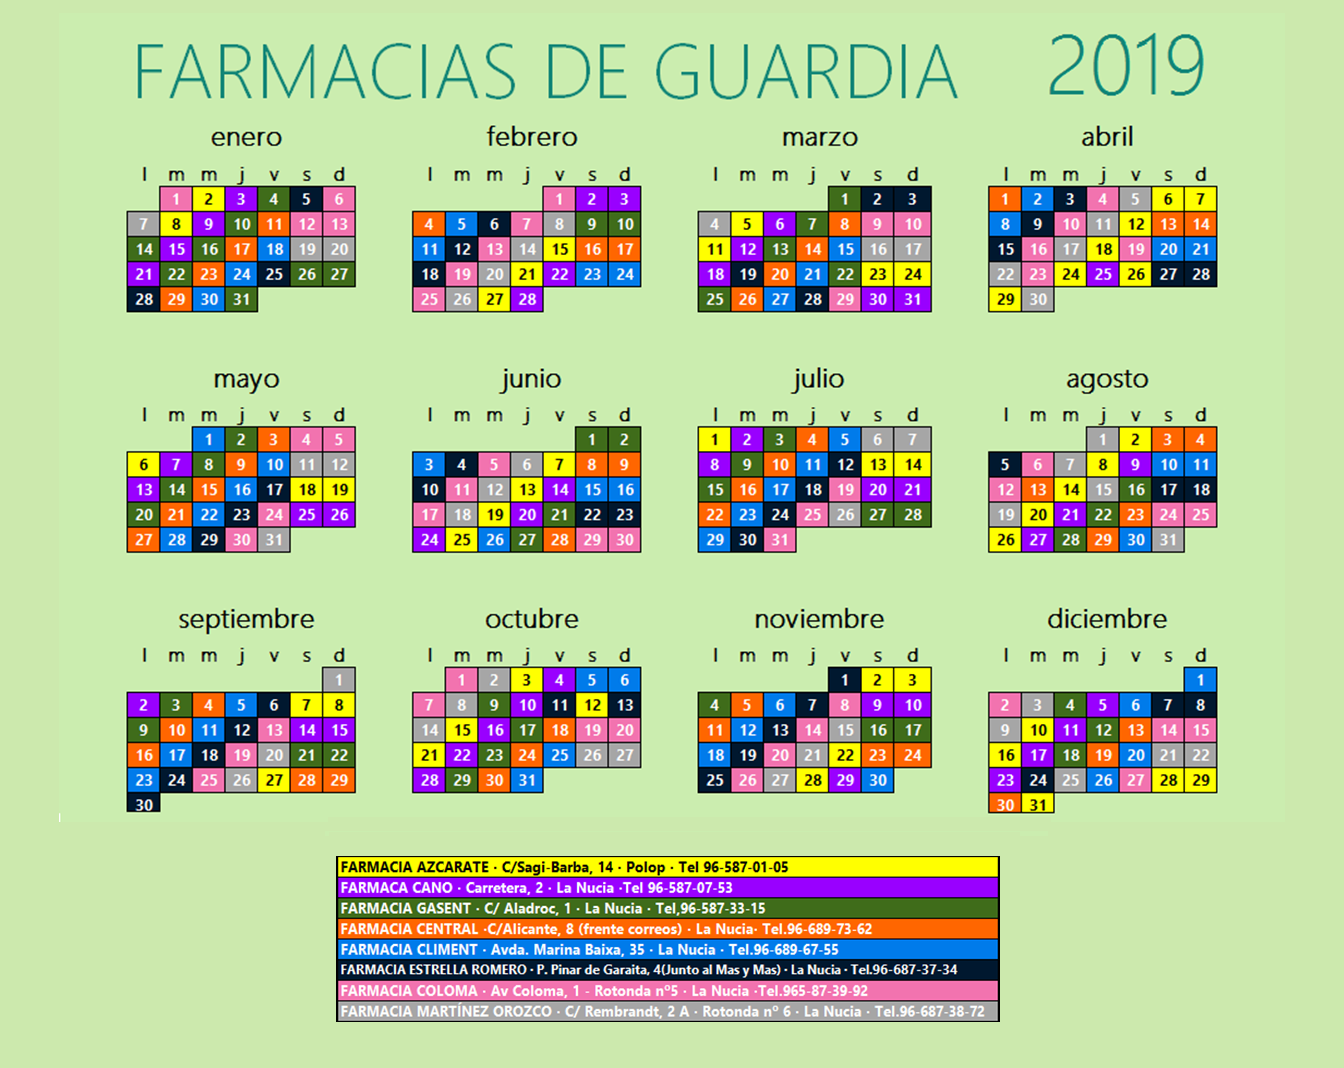 Farmacias de guardia 2019